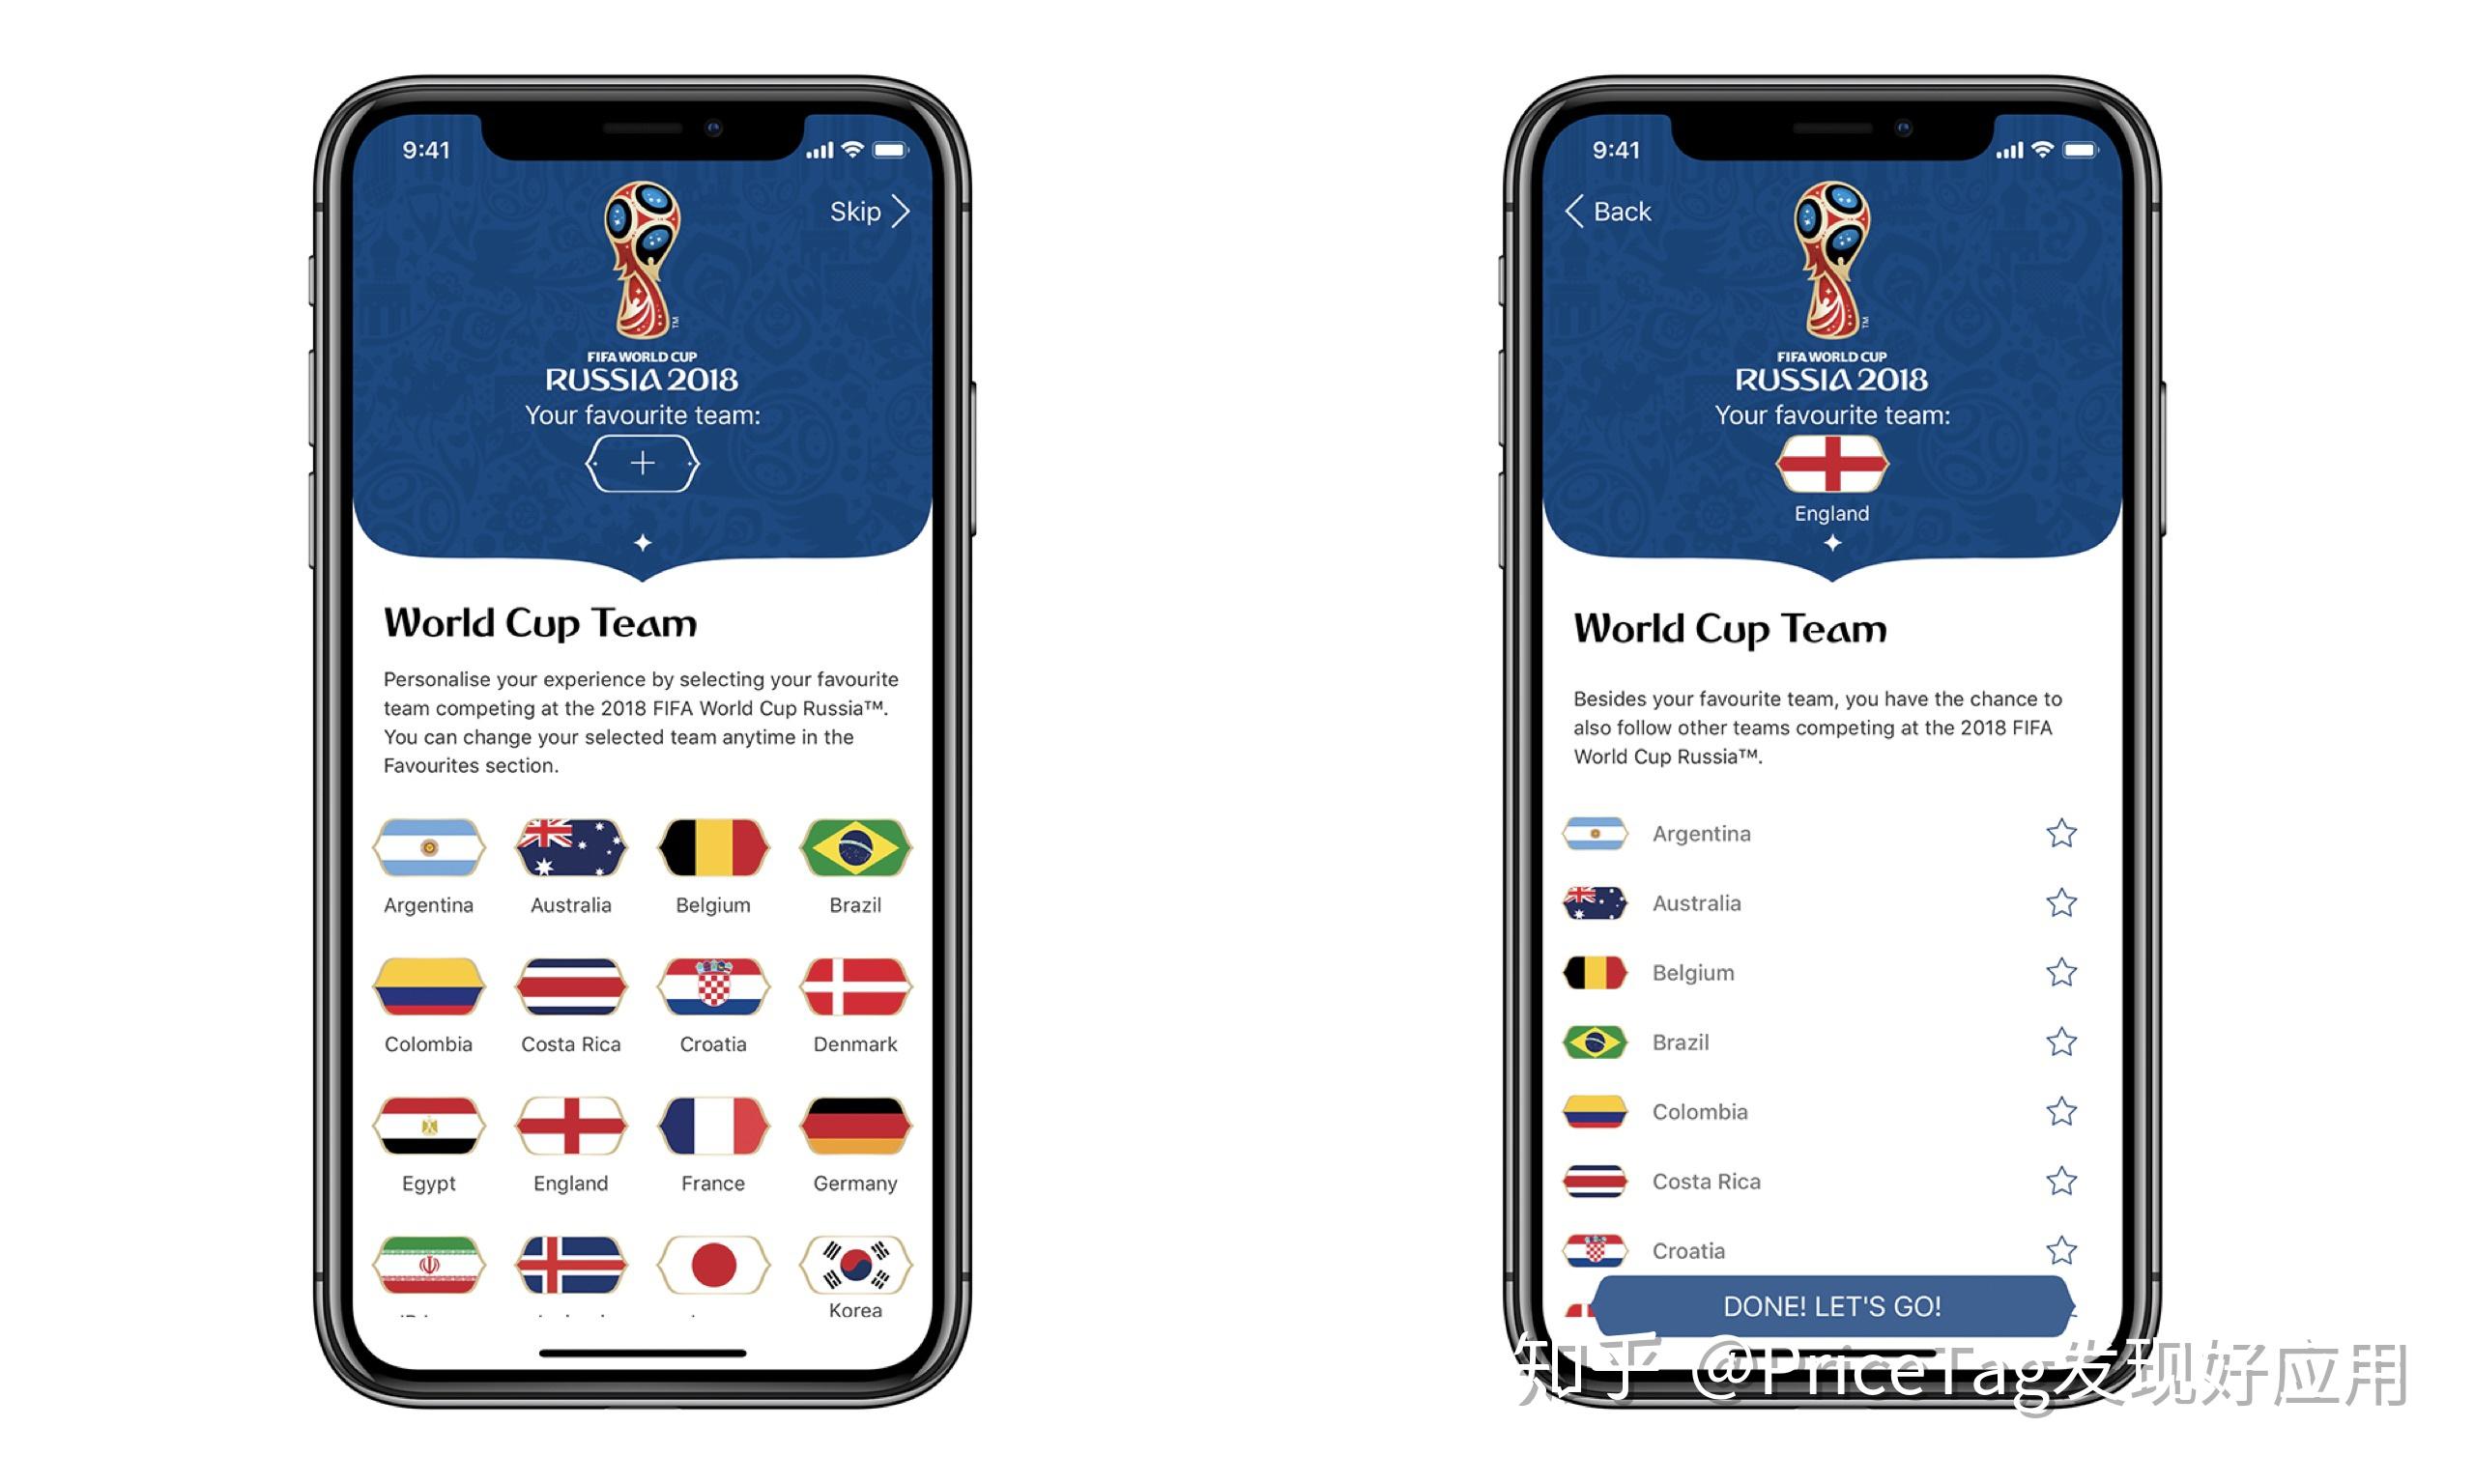 球迷必备的看球工具——国际足联官方 App「FIFA」全解析